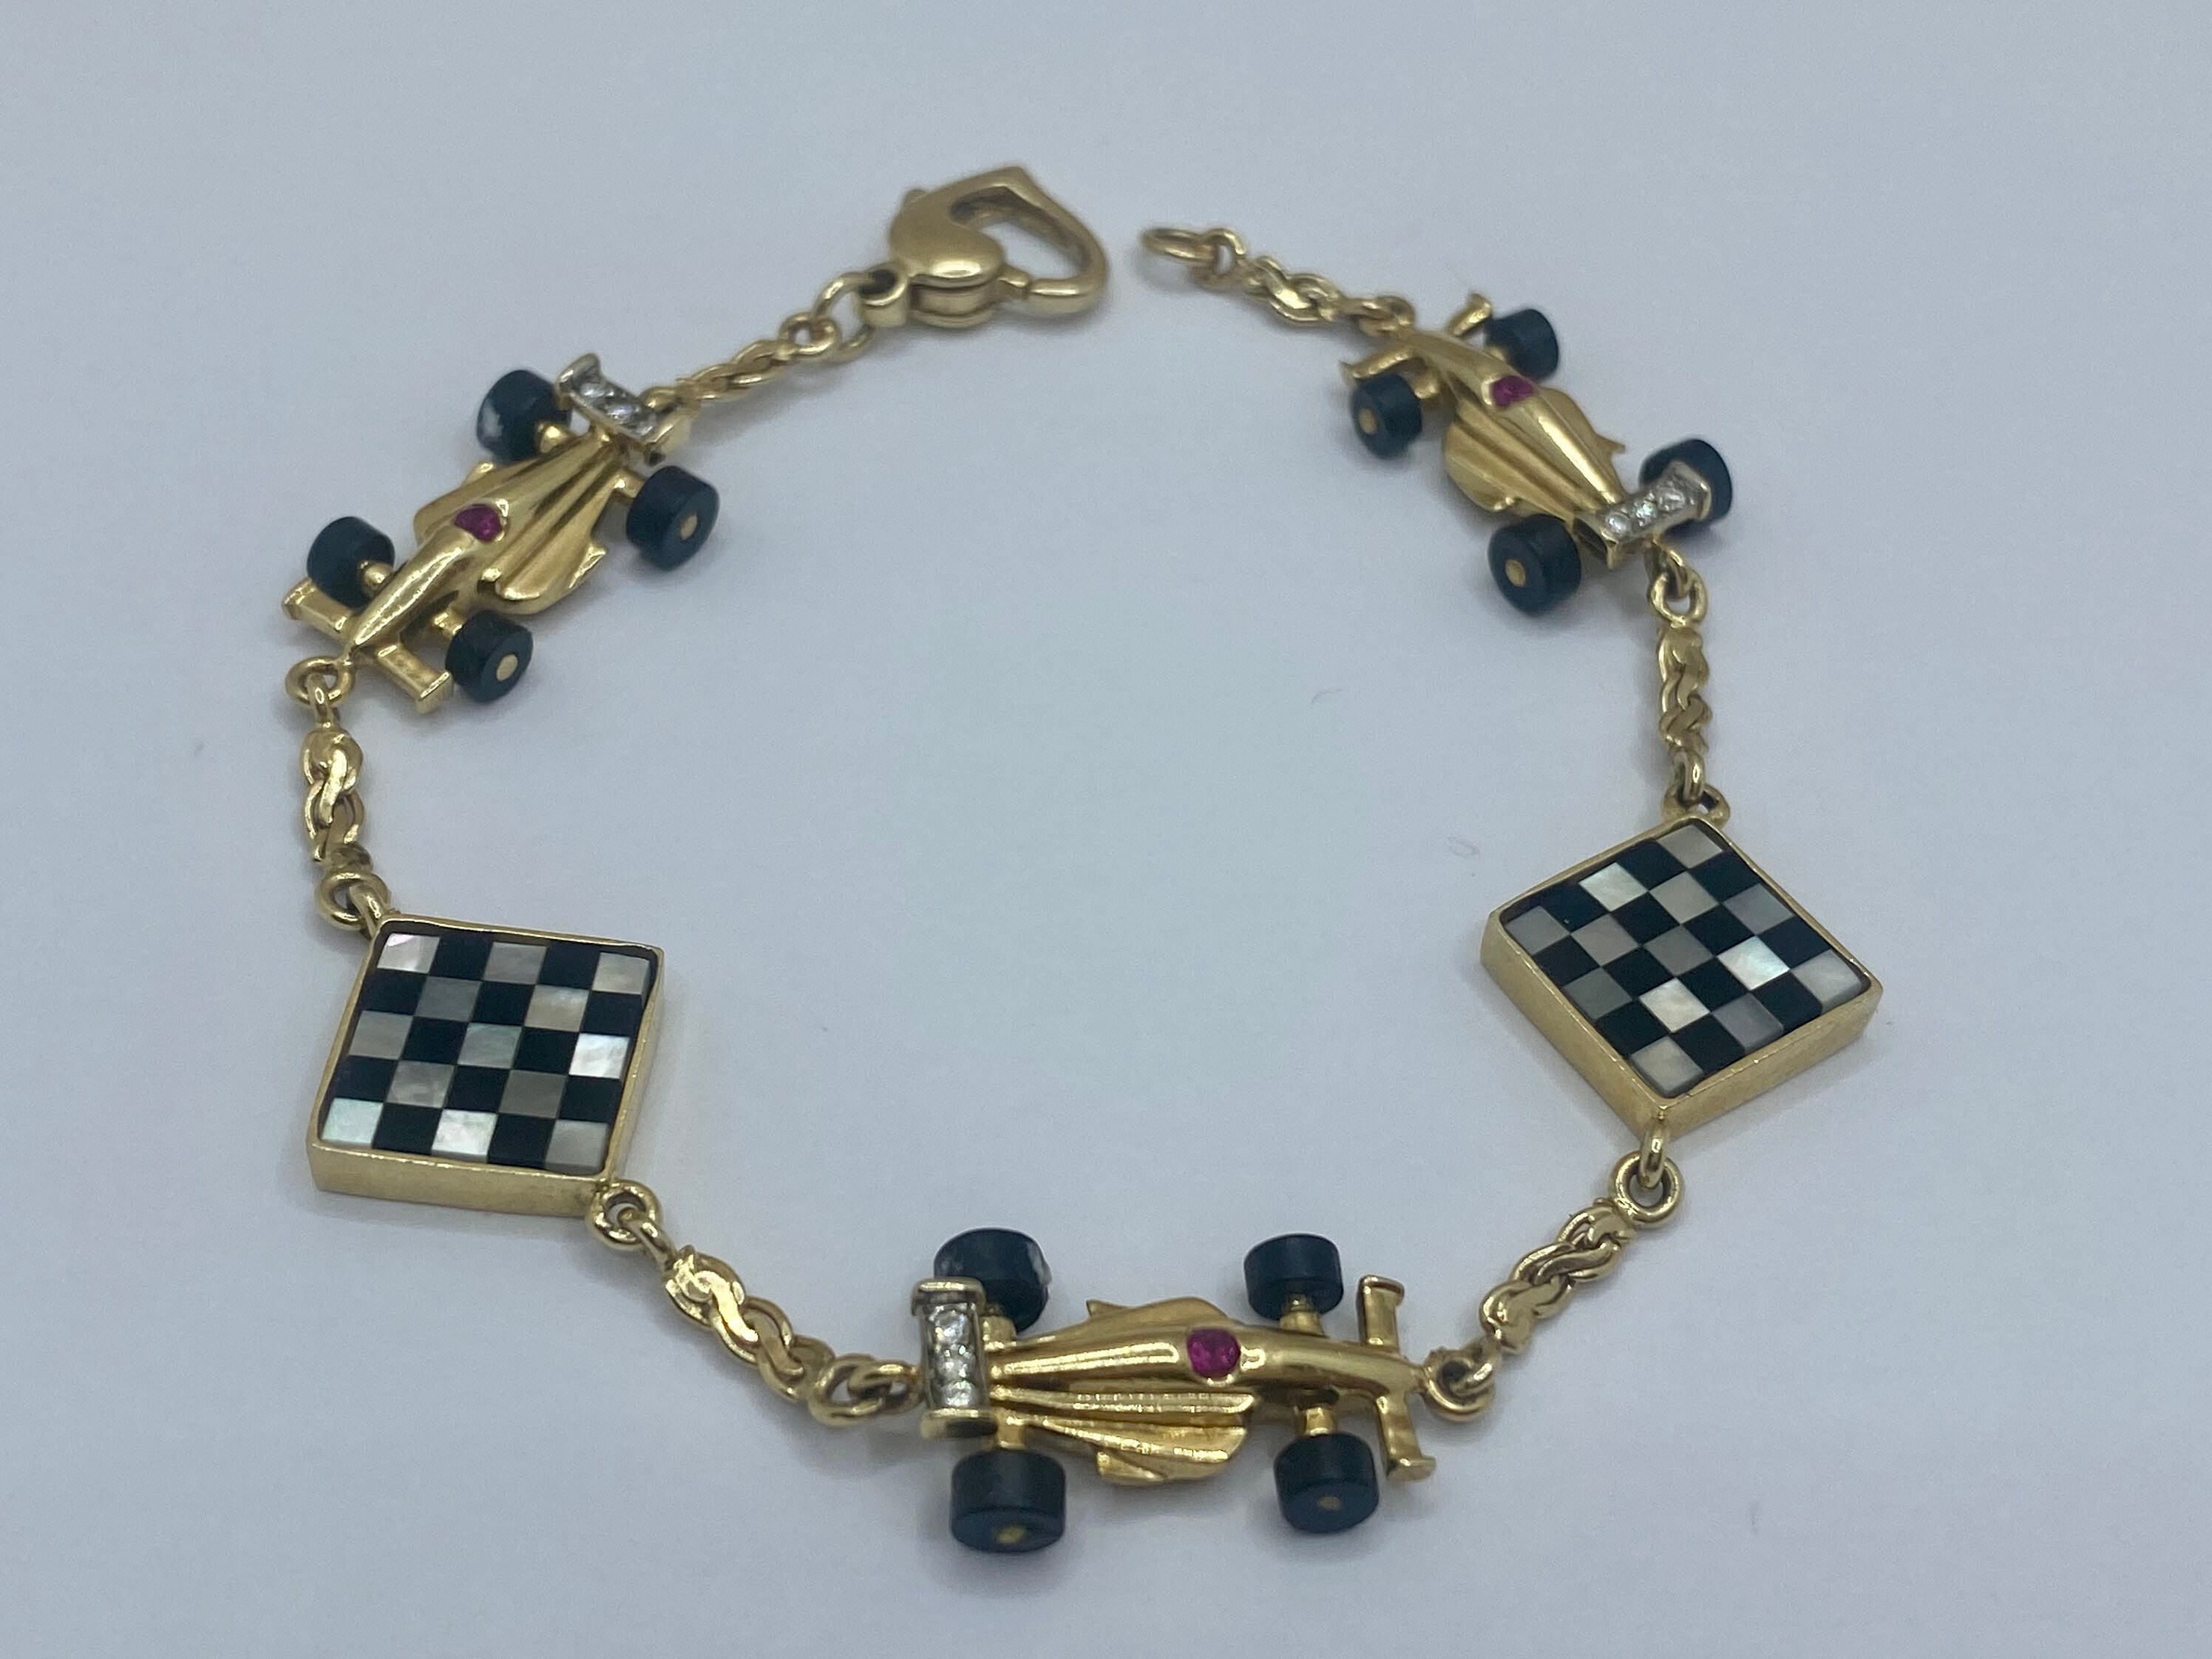 Car Part Charm Bracelet #3 - Driver's Bracelet